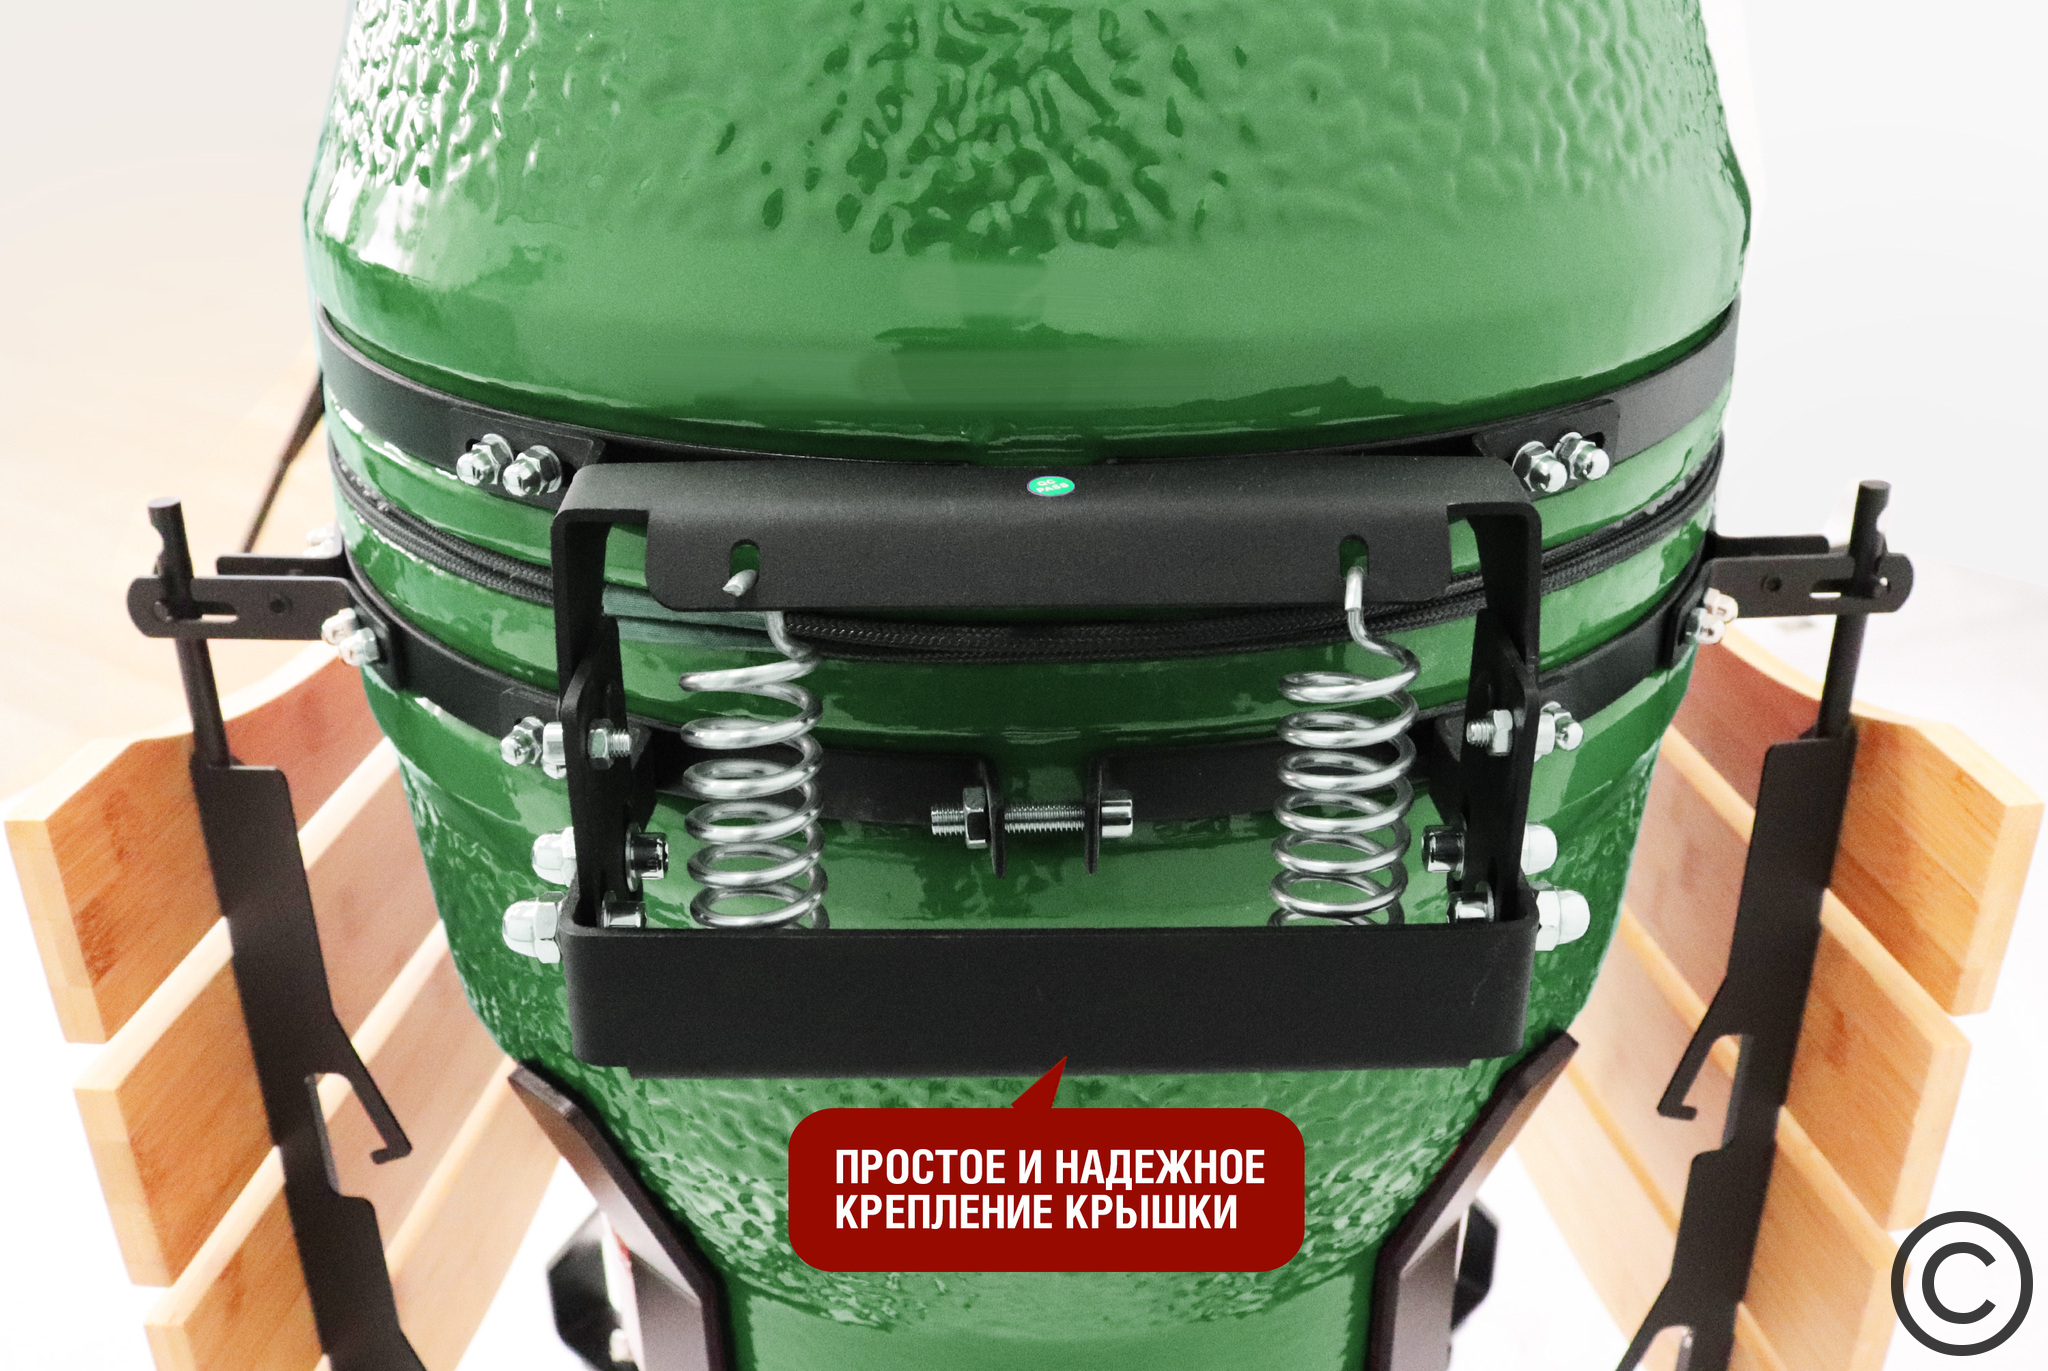 Керамический гриль SG18 PRO 45 см / 18 дюймов (зеленый) Артикул: SG18 PRO  зеленый Фото №8